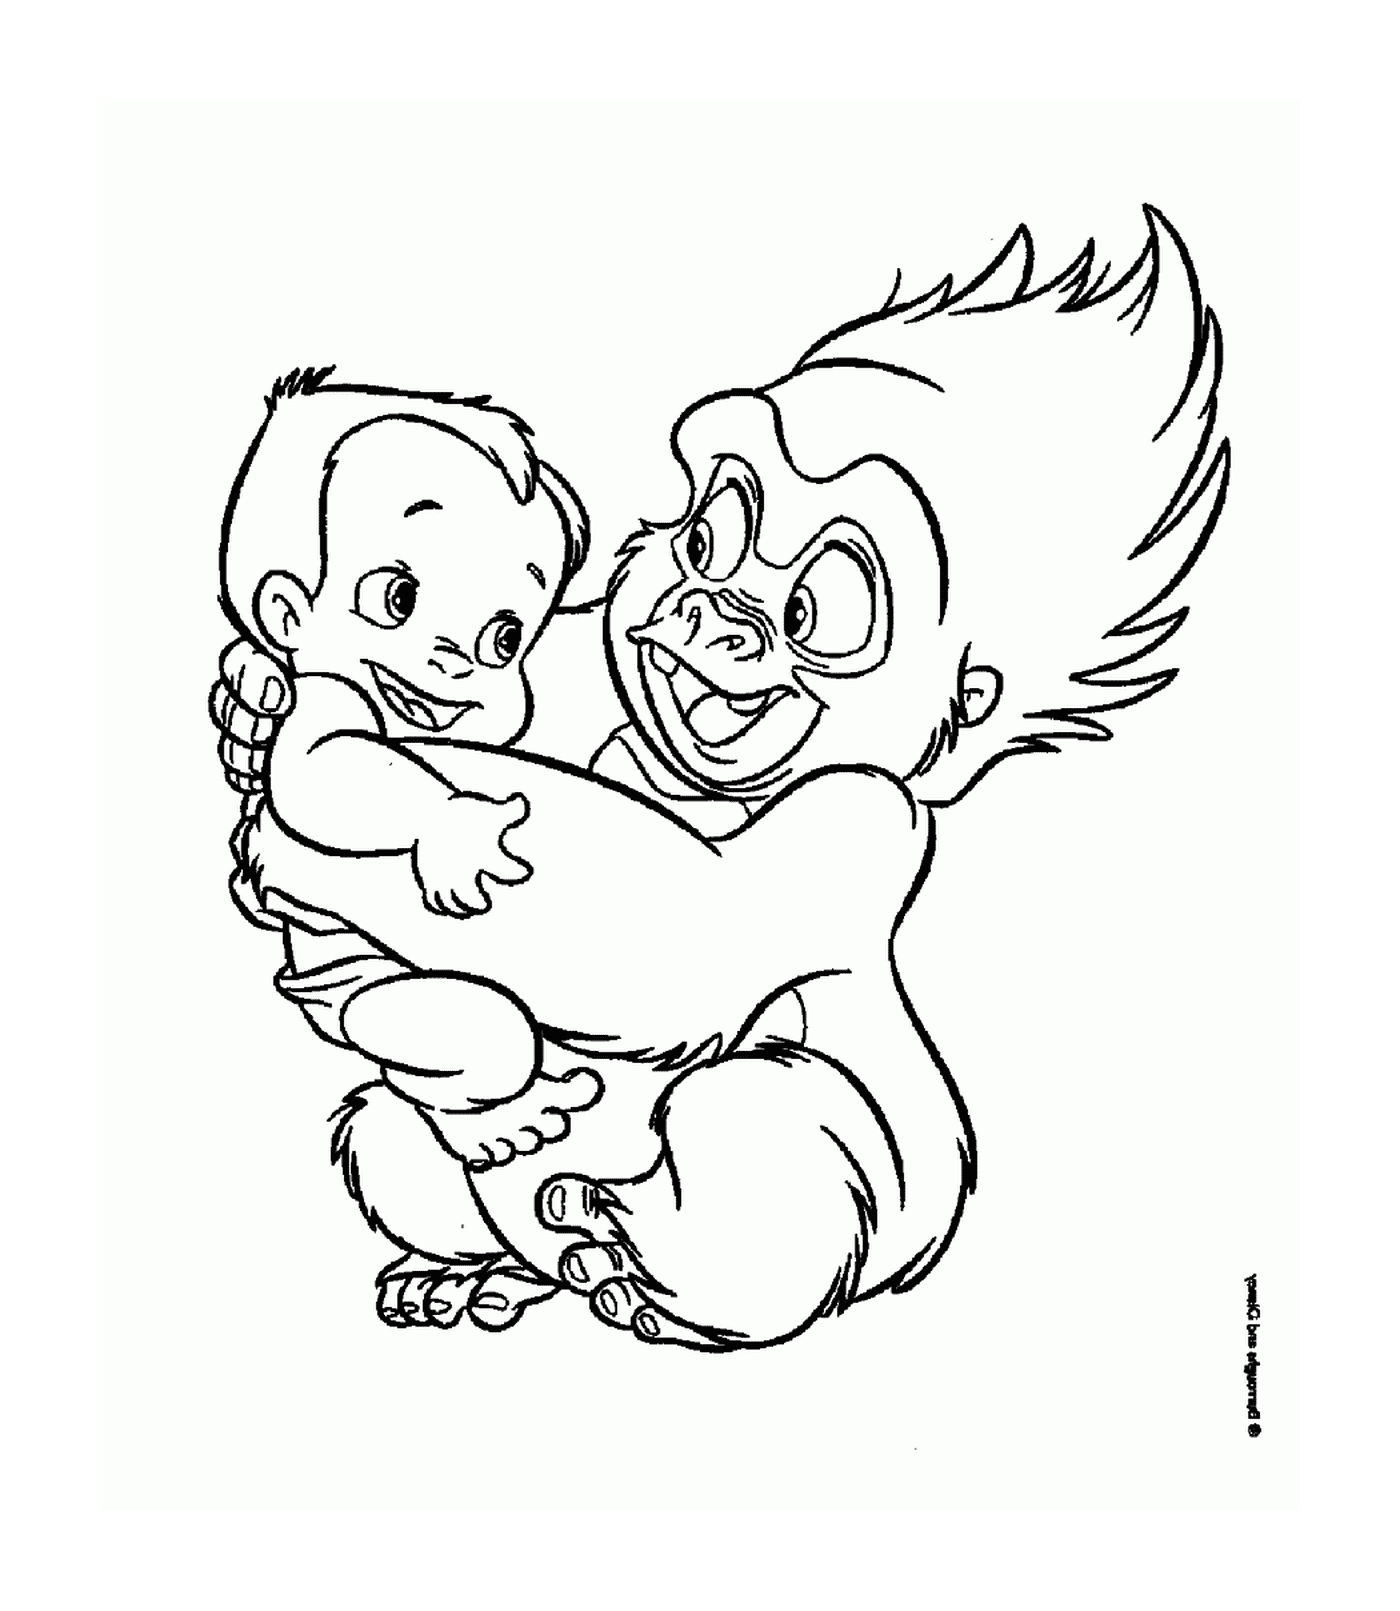  El gorila adulto y el bebé se abrazan 